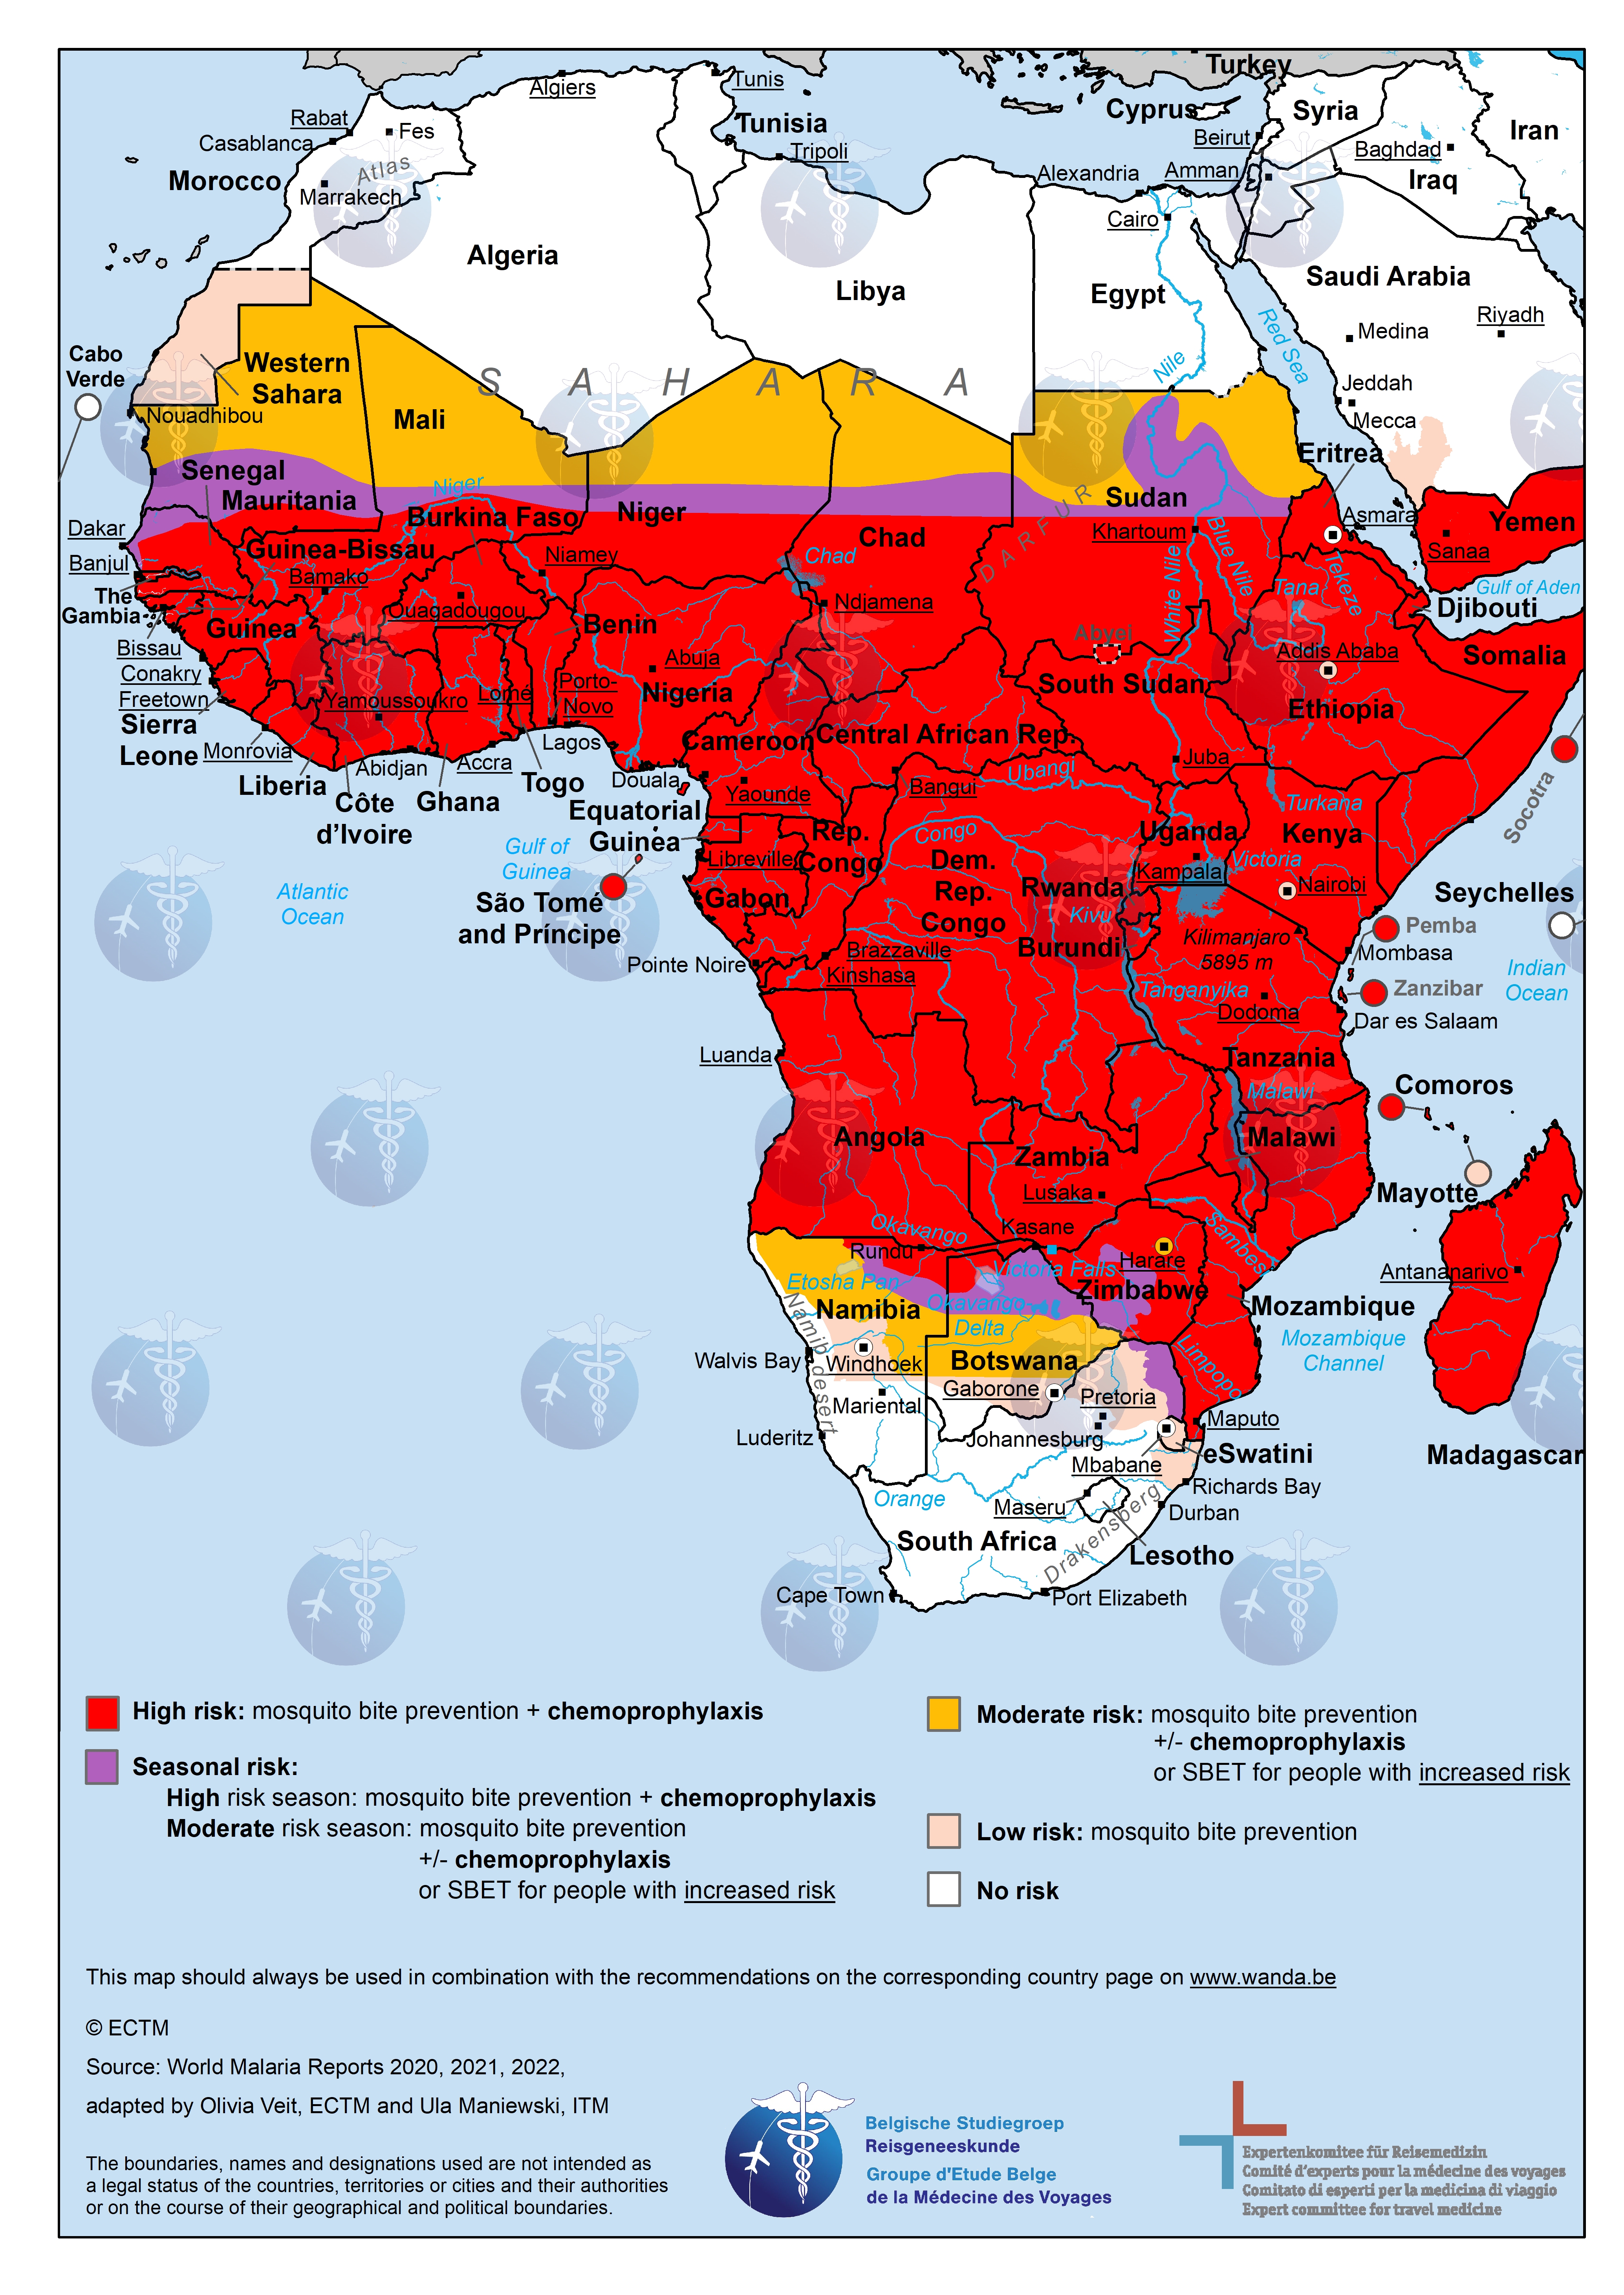 Kaart van Afrika met malaria-risicogebieden